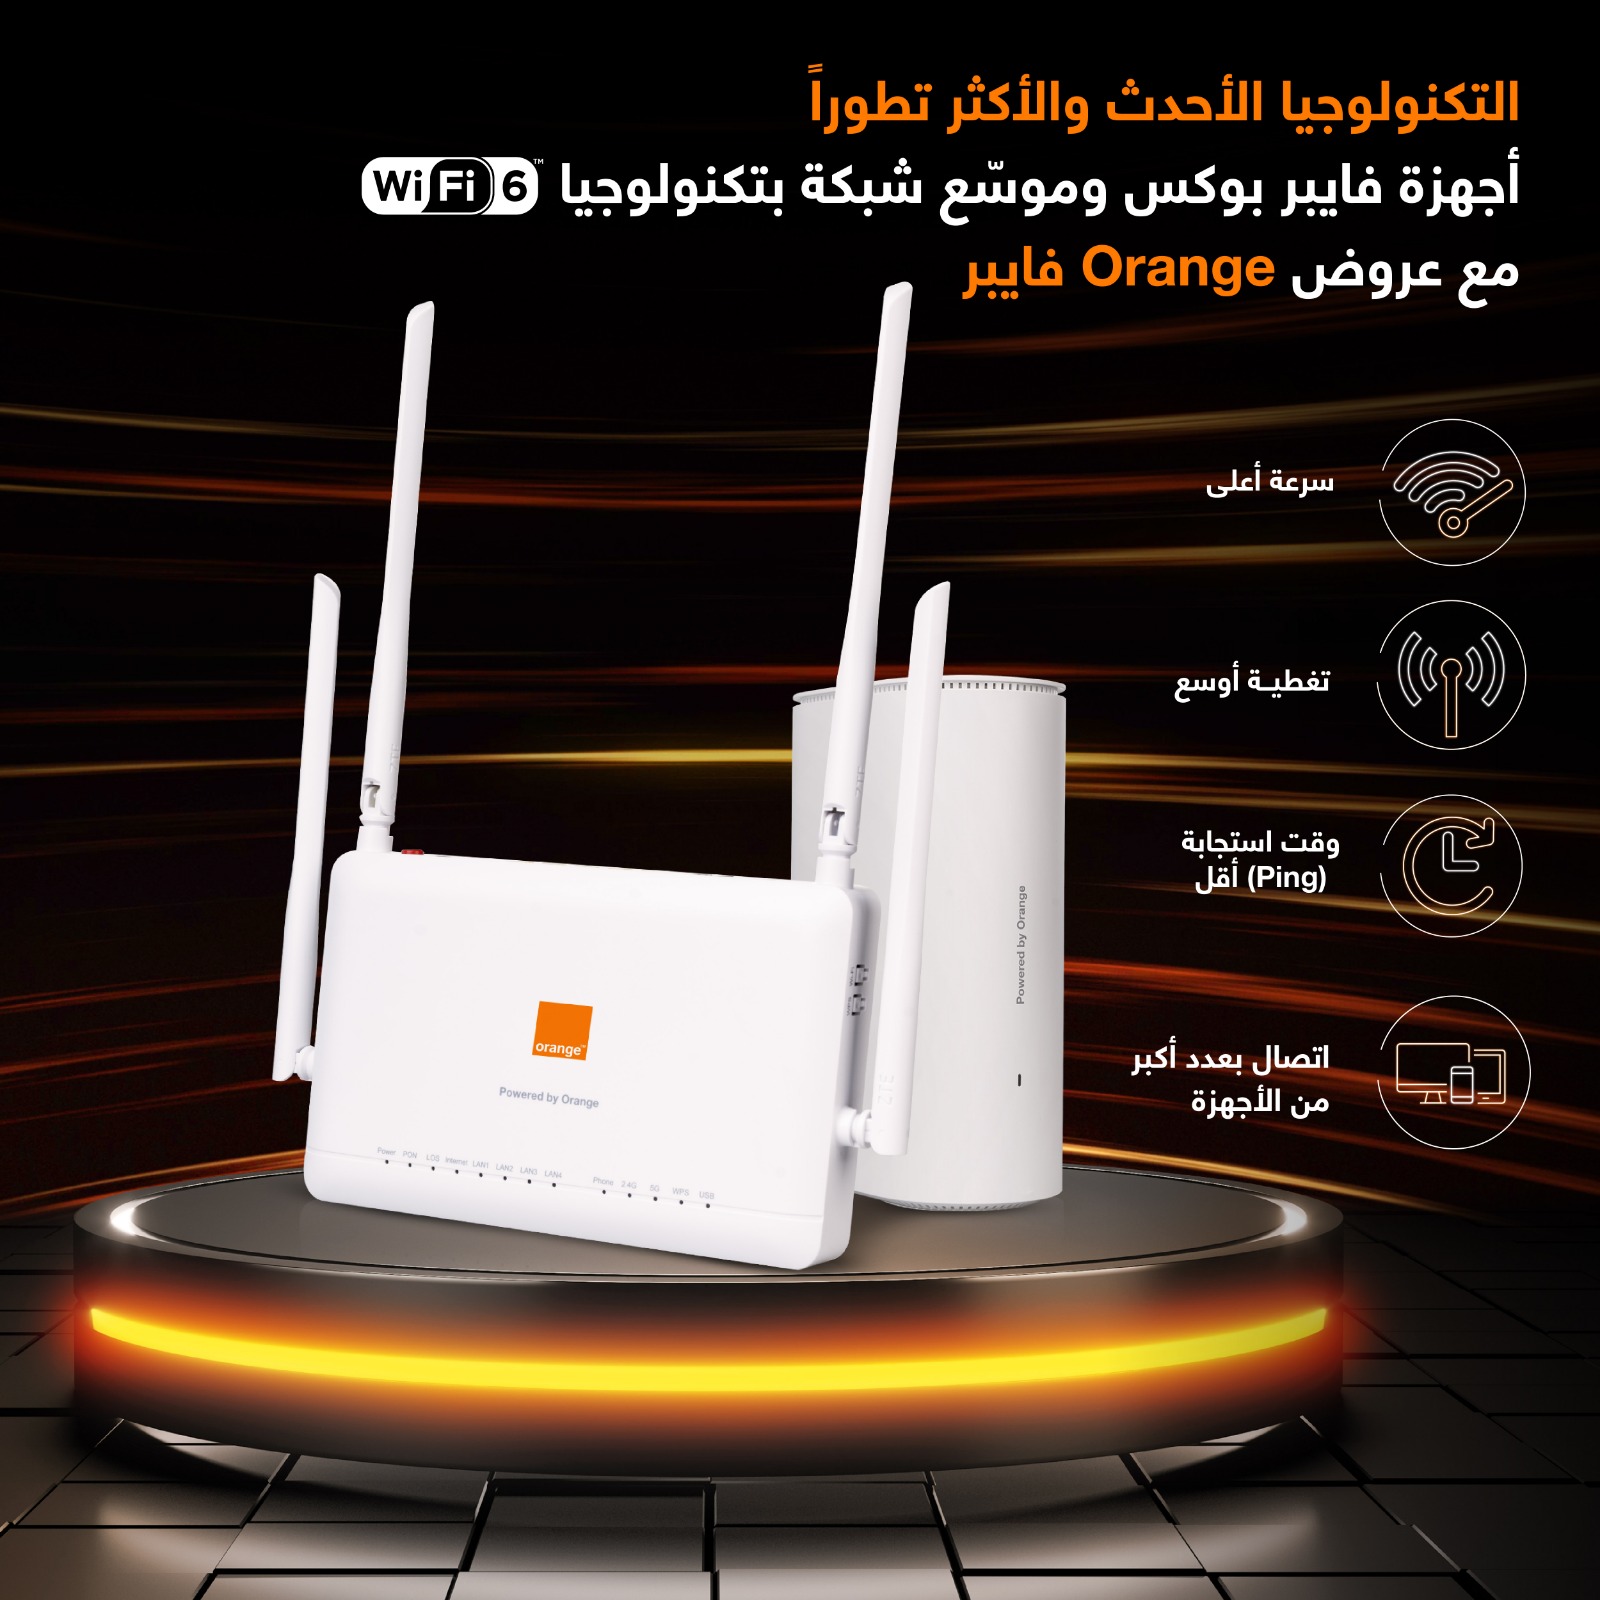 لأوّل مرة في الأردن  أورنج فايبر تقدّم التكنولوجيا الأحدث والأكثر تقدماً WiFi 6